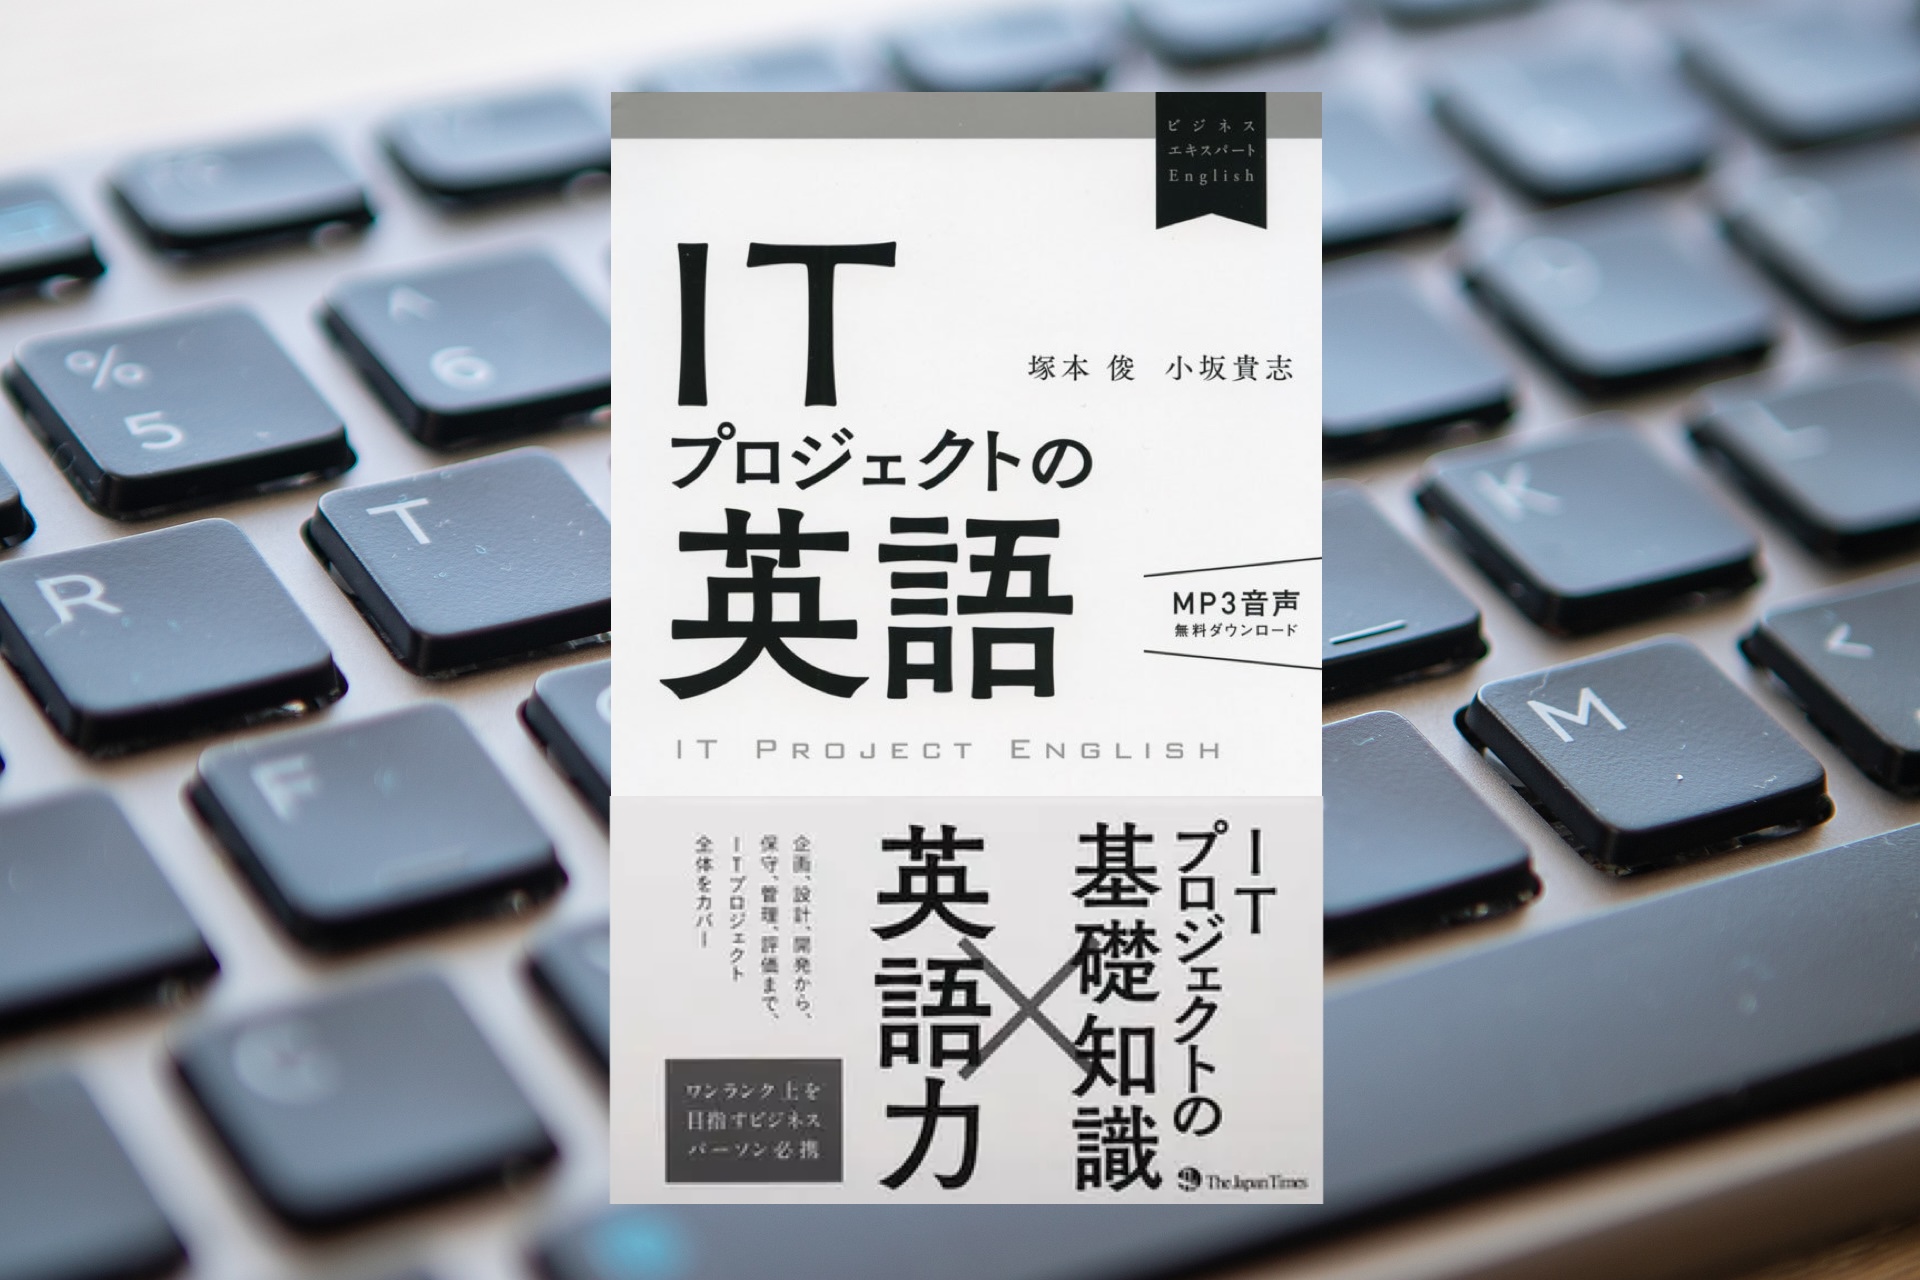 【中級者】書籍「ITプロジェクトの英語」より「知っておくべき英語での言い回し10選」